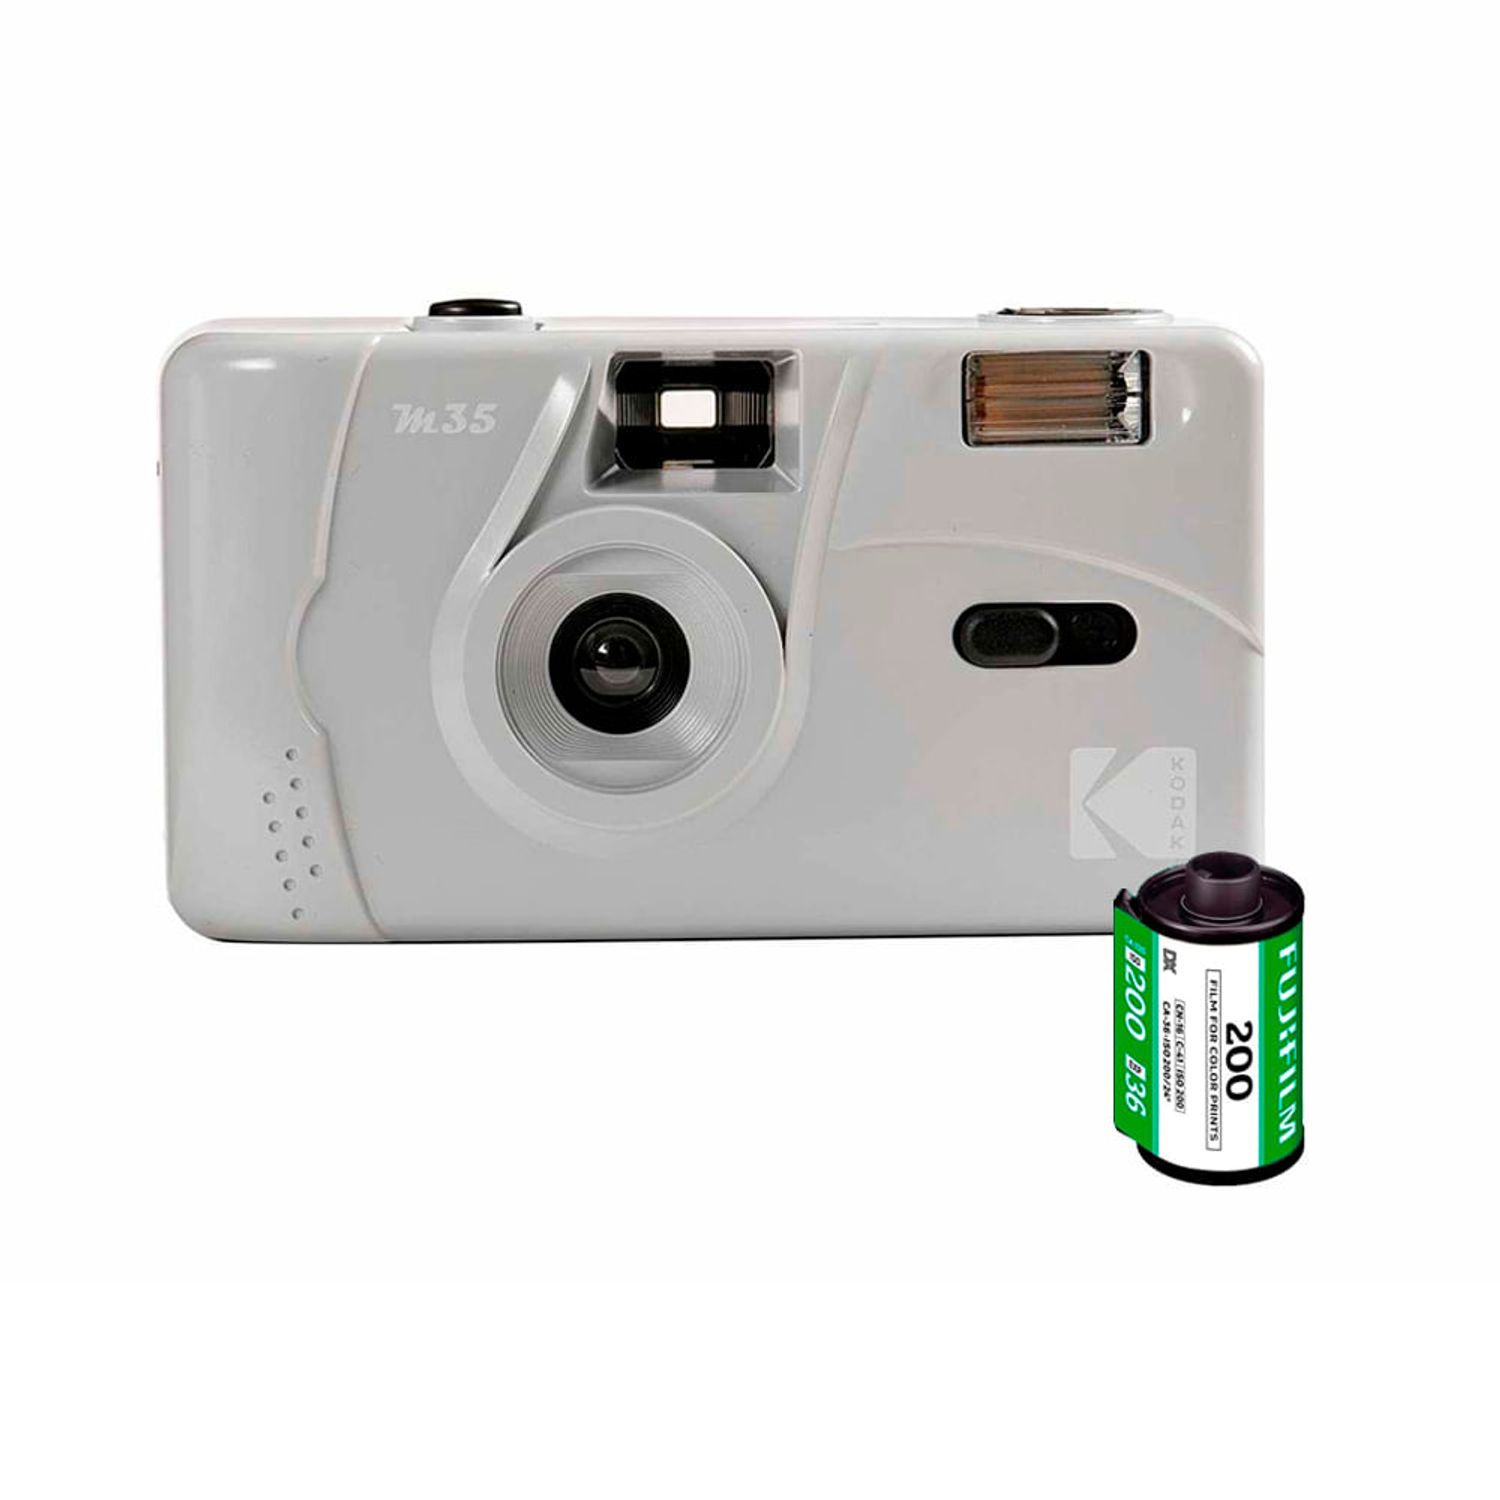 Cámara Digital Kodak Pixpro Fz45 Roja I Oechsle - Oechsle